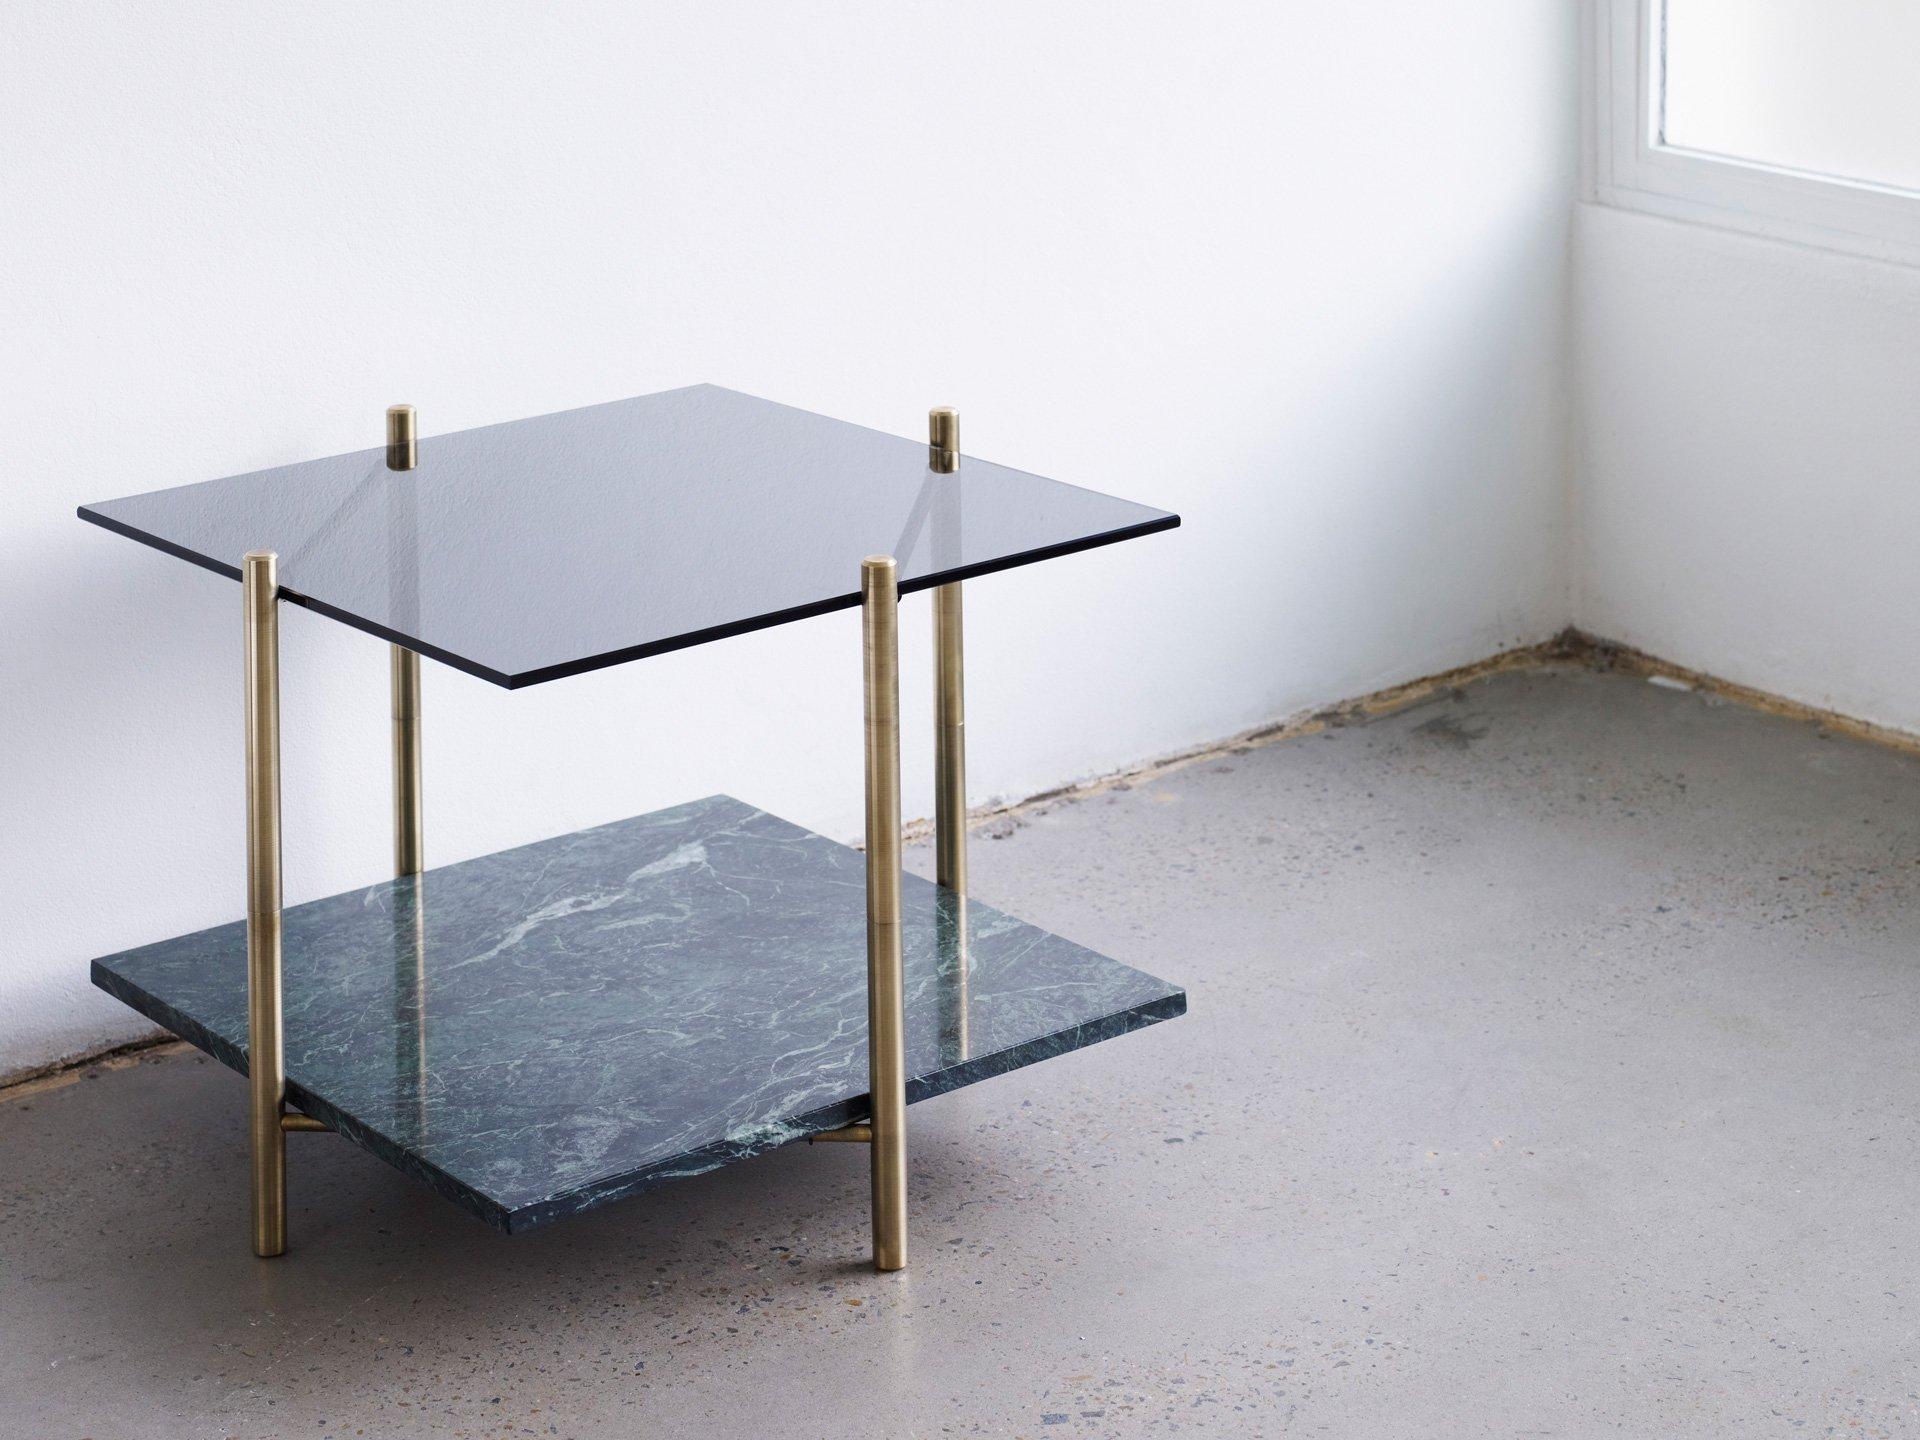 Couchtisch von Henry Wilson
Quadratischer Tisch/runder Tisch

Massiver Messingrahmen mit zwei abgestuften Oberflächen. Alle Tische werden auf Bestellung aus den vom Kunden angegebenen Materialien hergestellt. Einige Möglichkeiten sind: